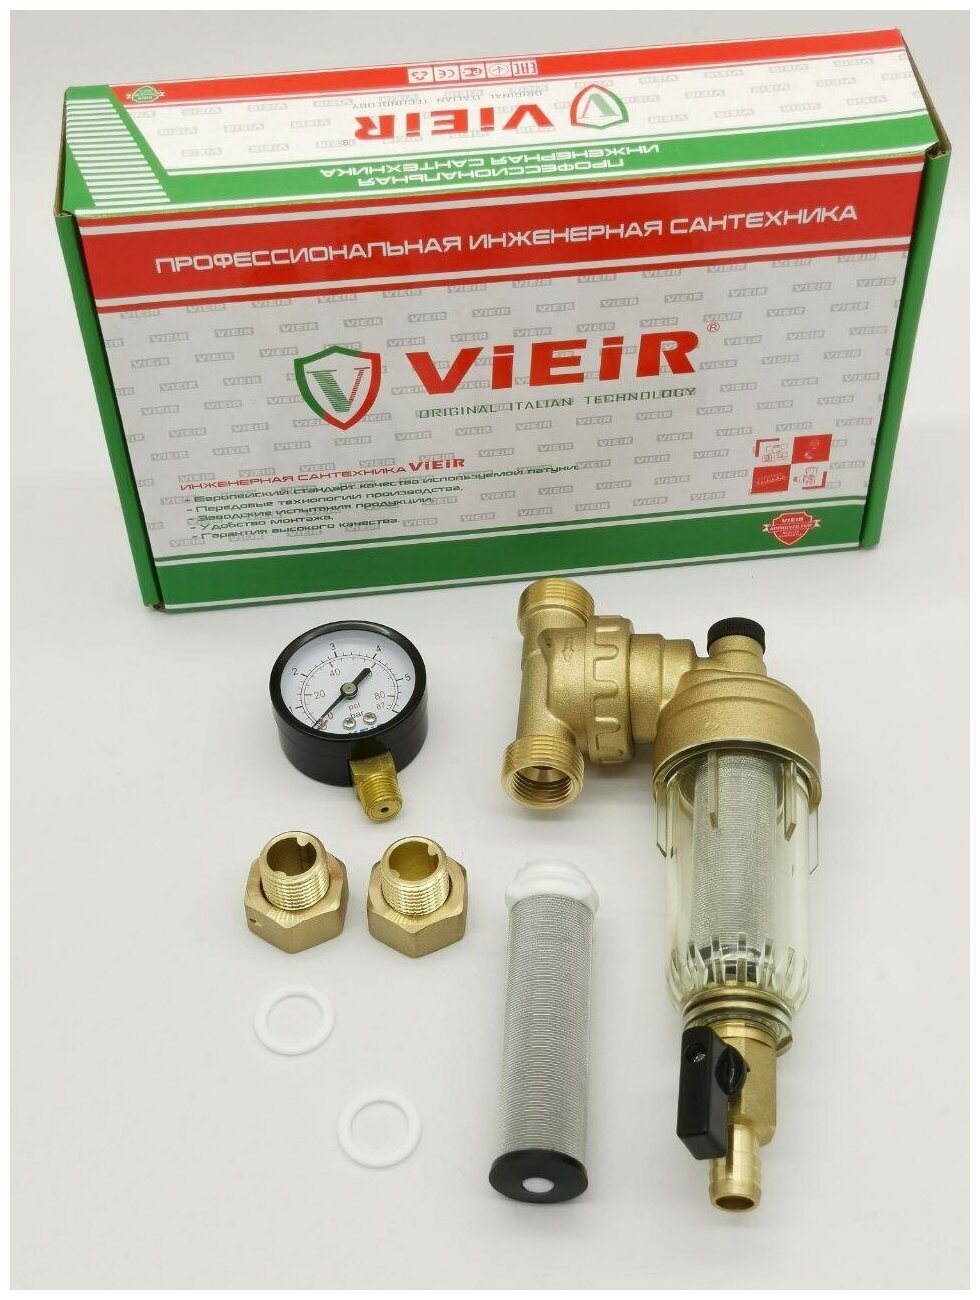 Самопромывной фильтр свободного вращения с манометром 1/2" ViEiR (JC148), для холодной воды